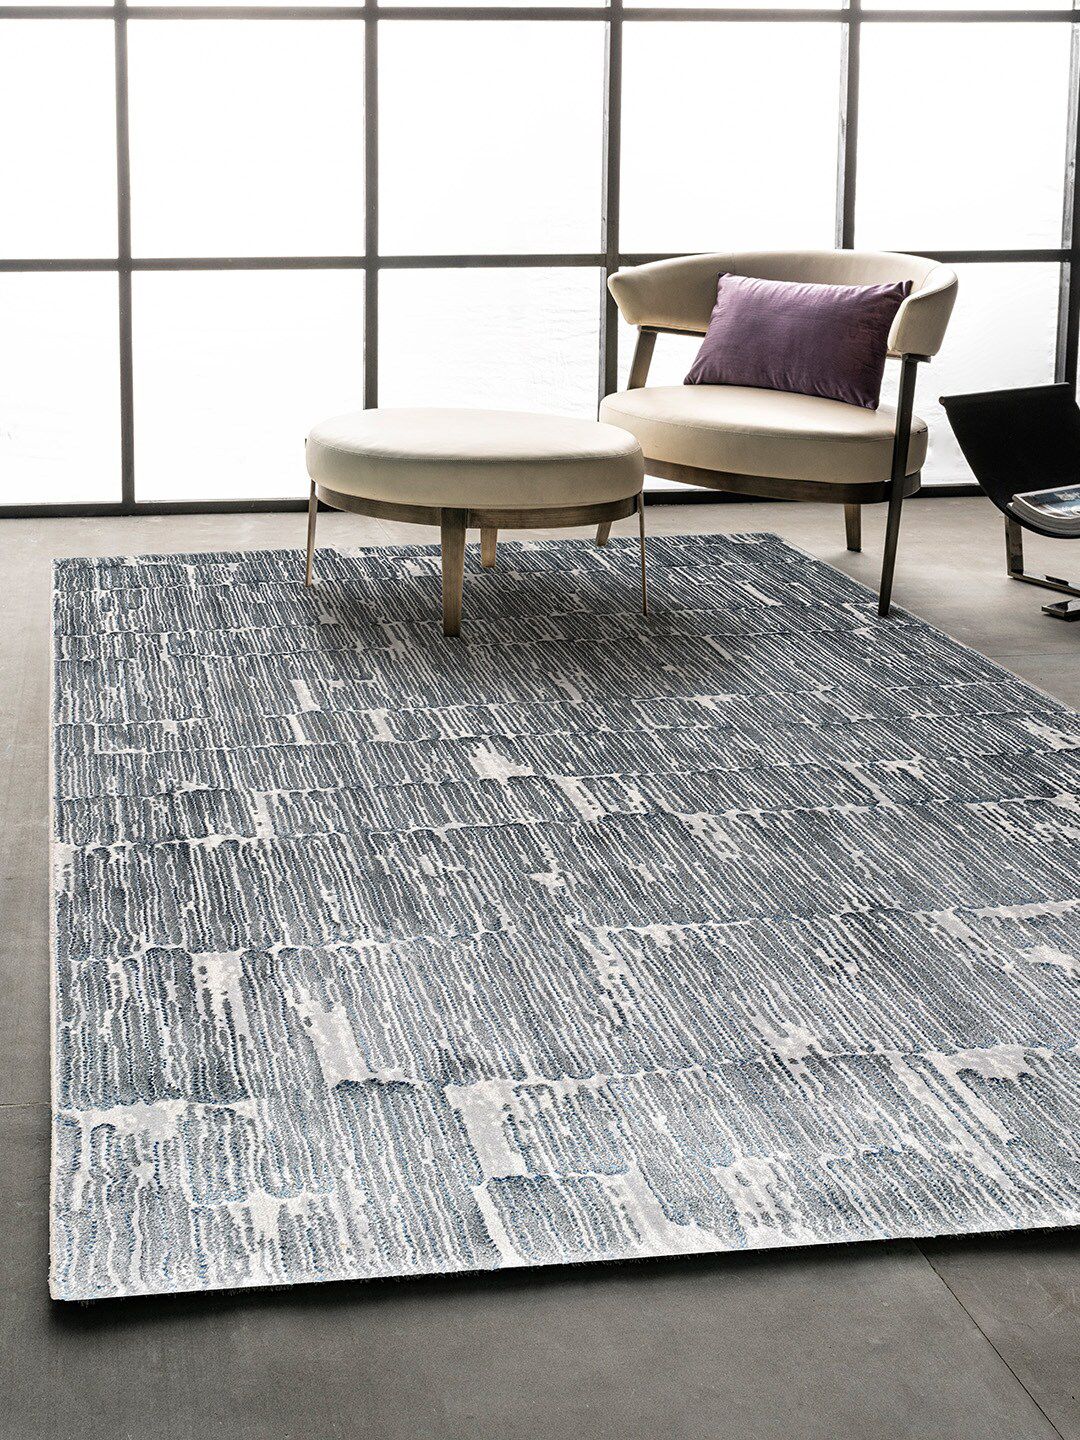 DDecor Grey Self Design Medium Carpet Price in India